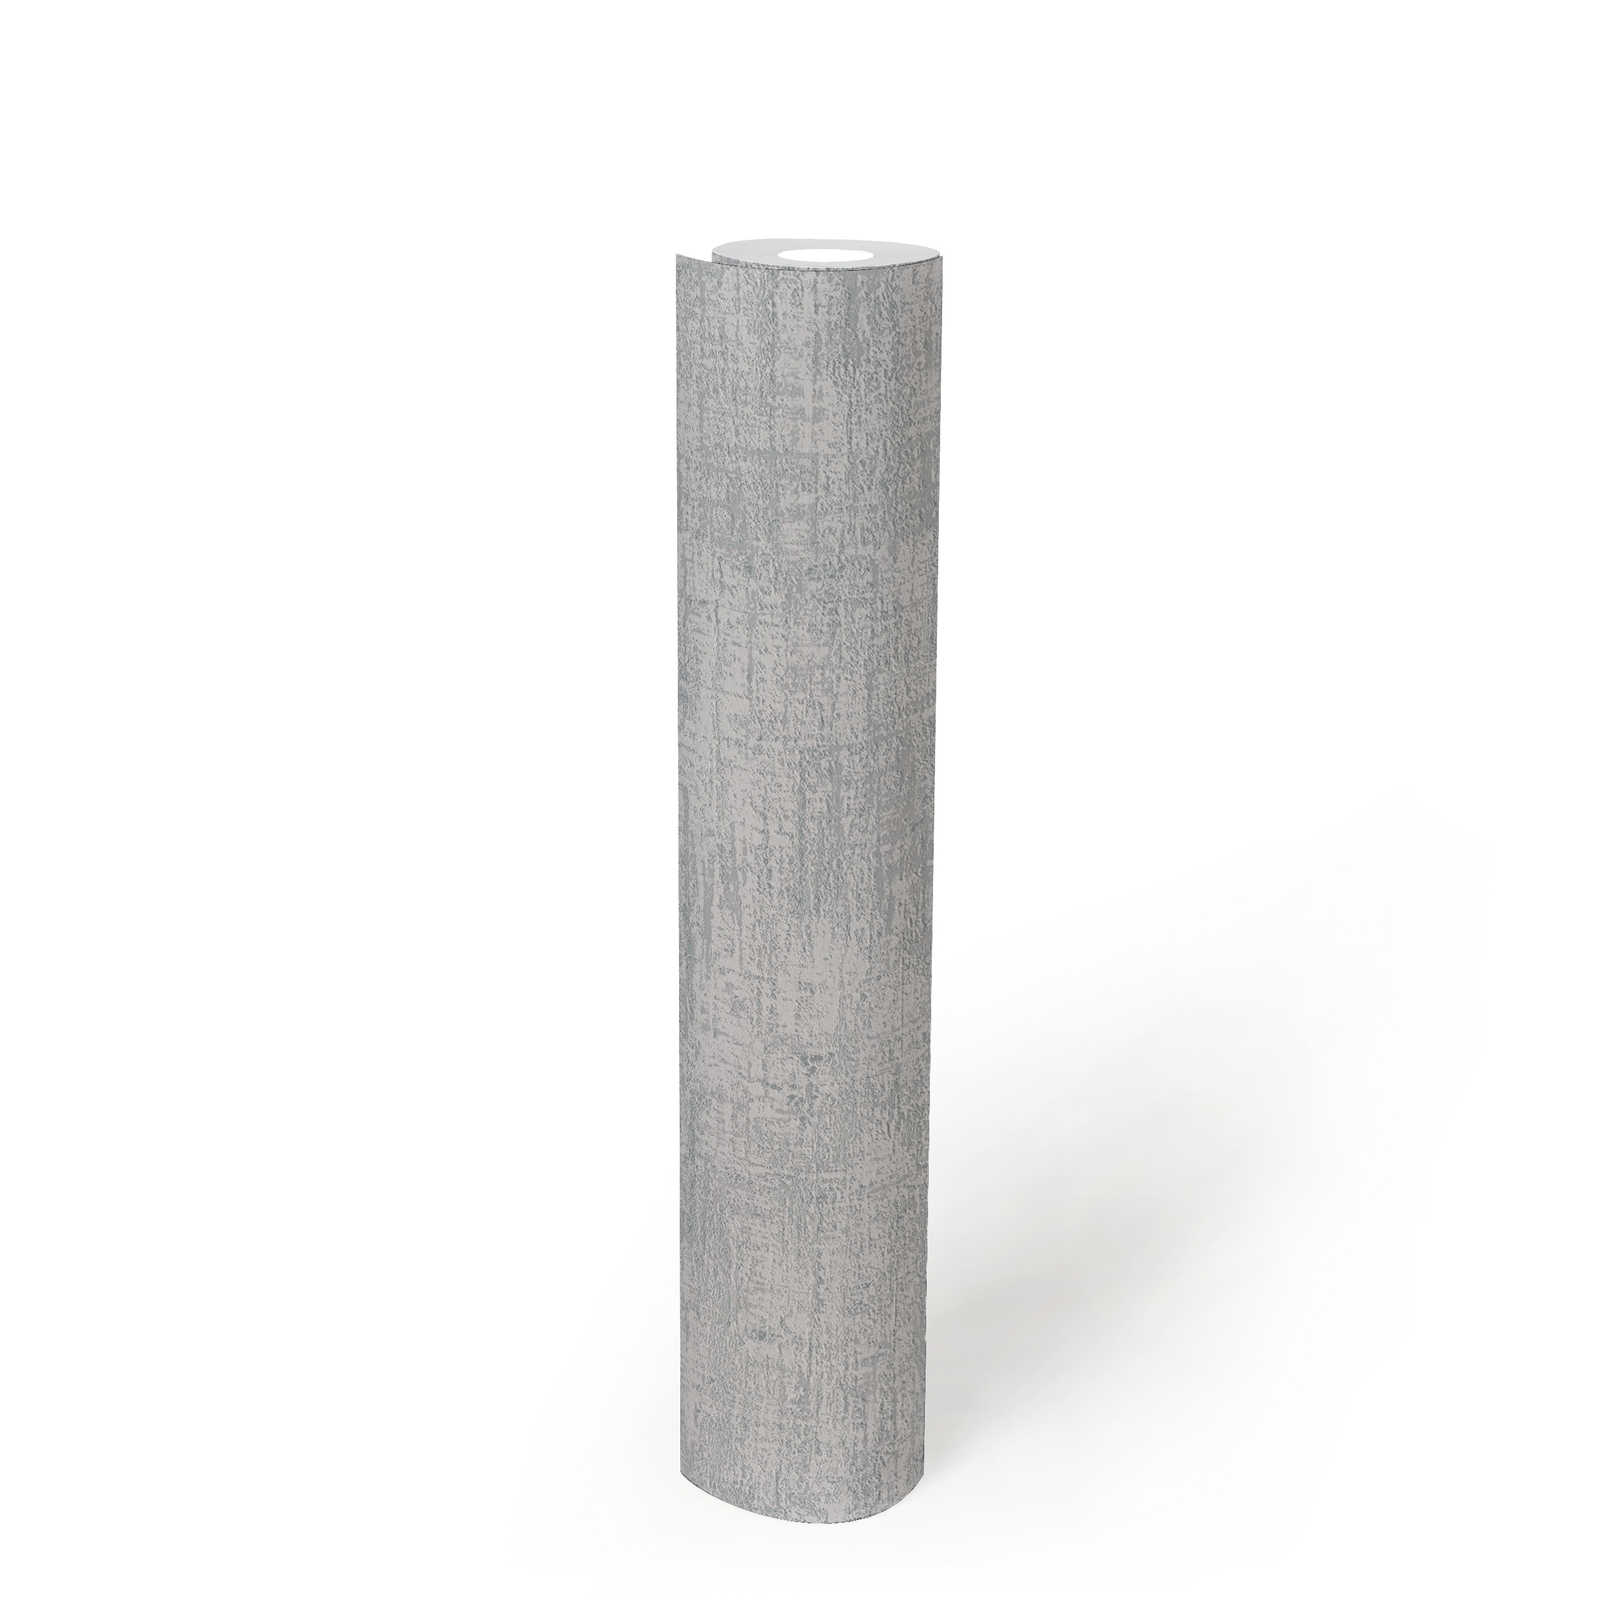             Vliestapete mit metallischen Akzenten – Grau, Silber
        